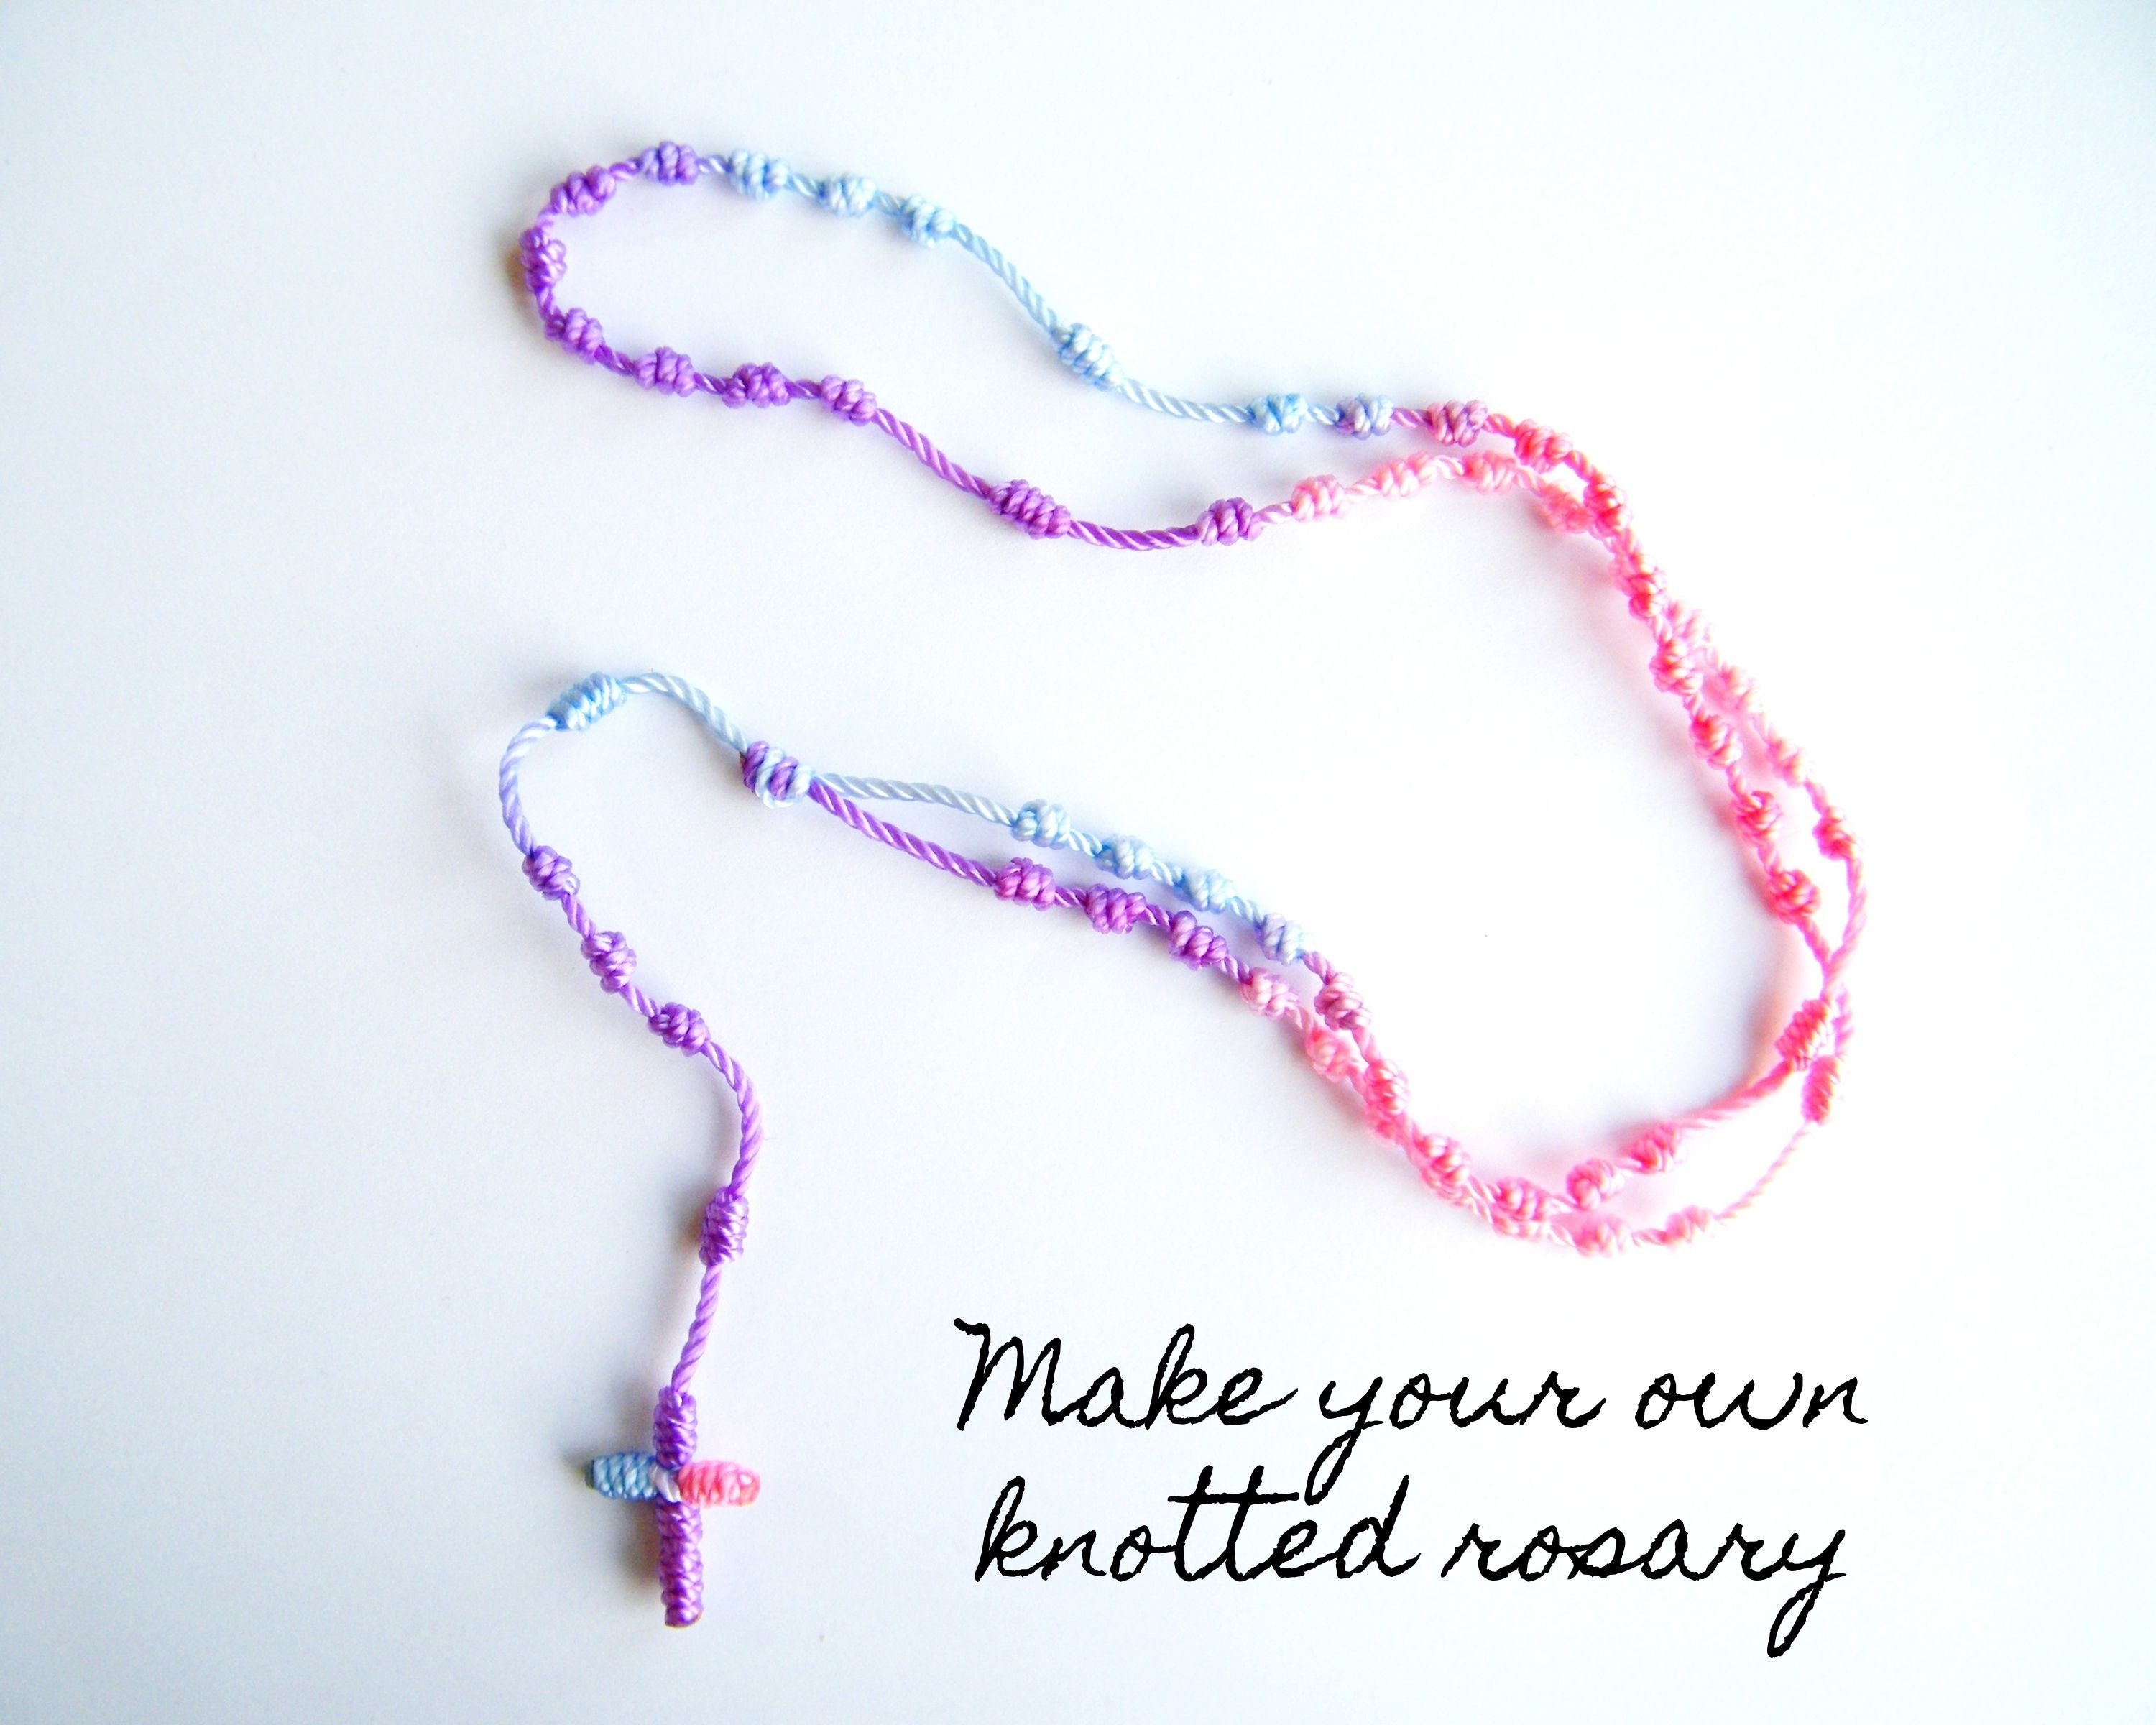 Rosary Inspired Slave Bracelet Tutorial - YouTube